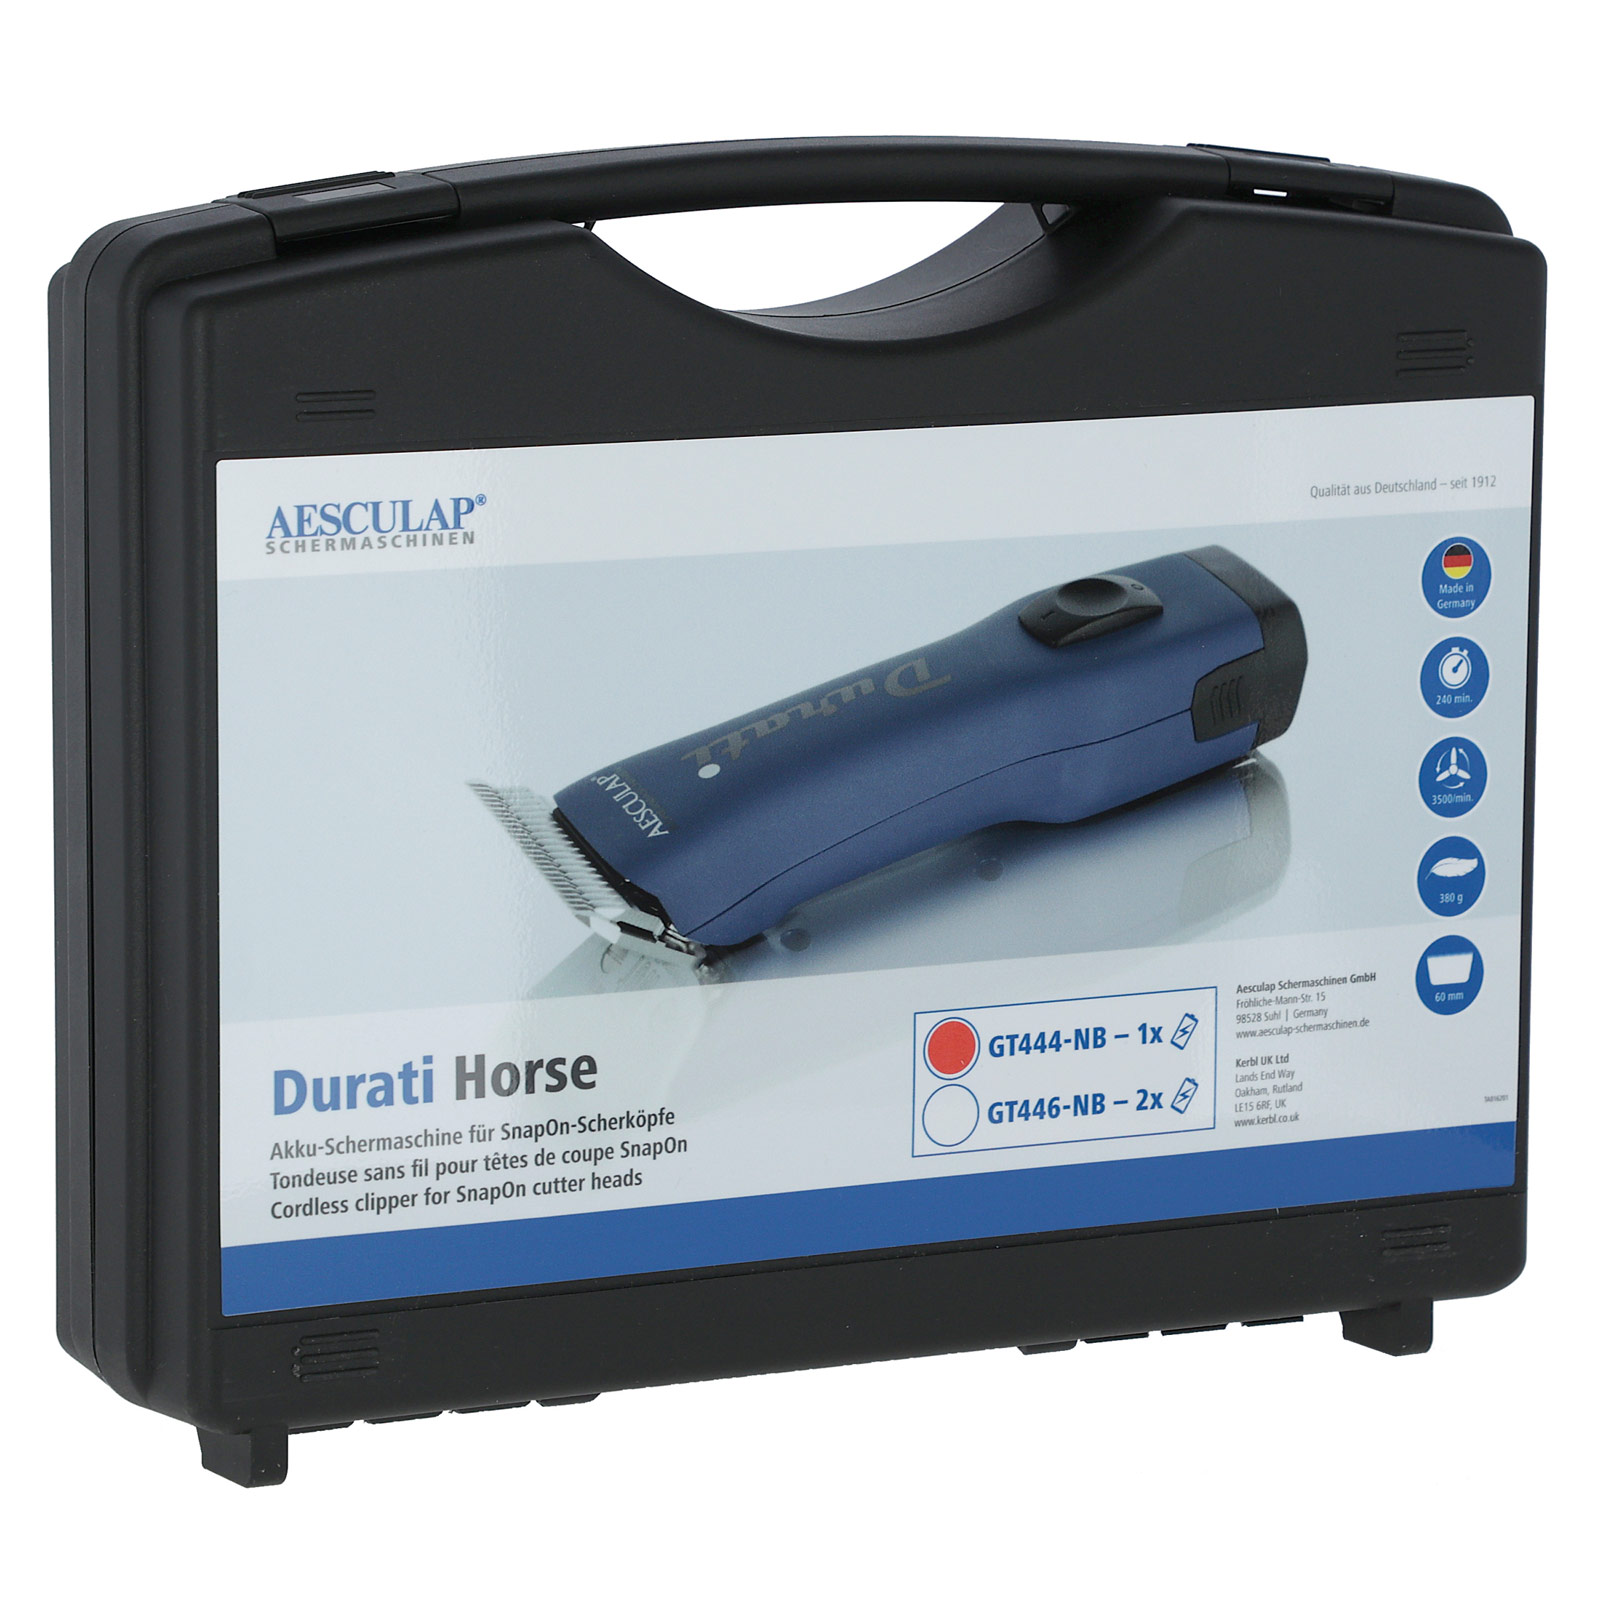 Aesculap Durati Horse Clipper battery